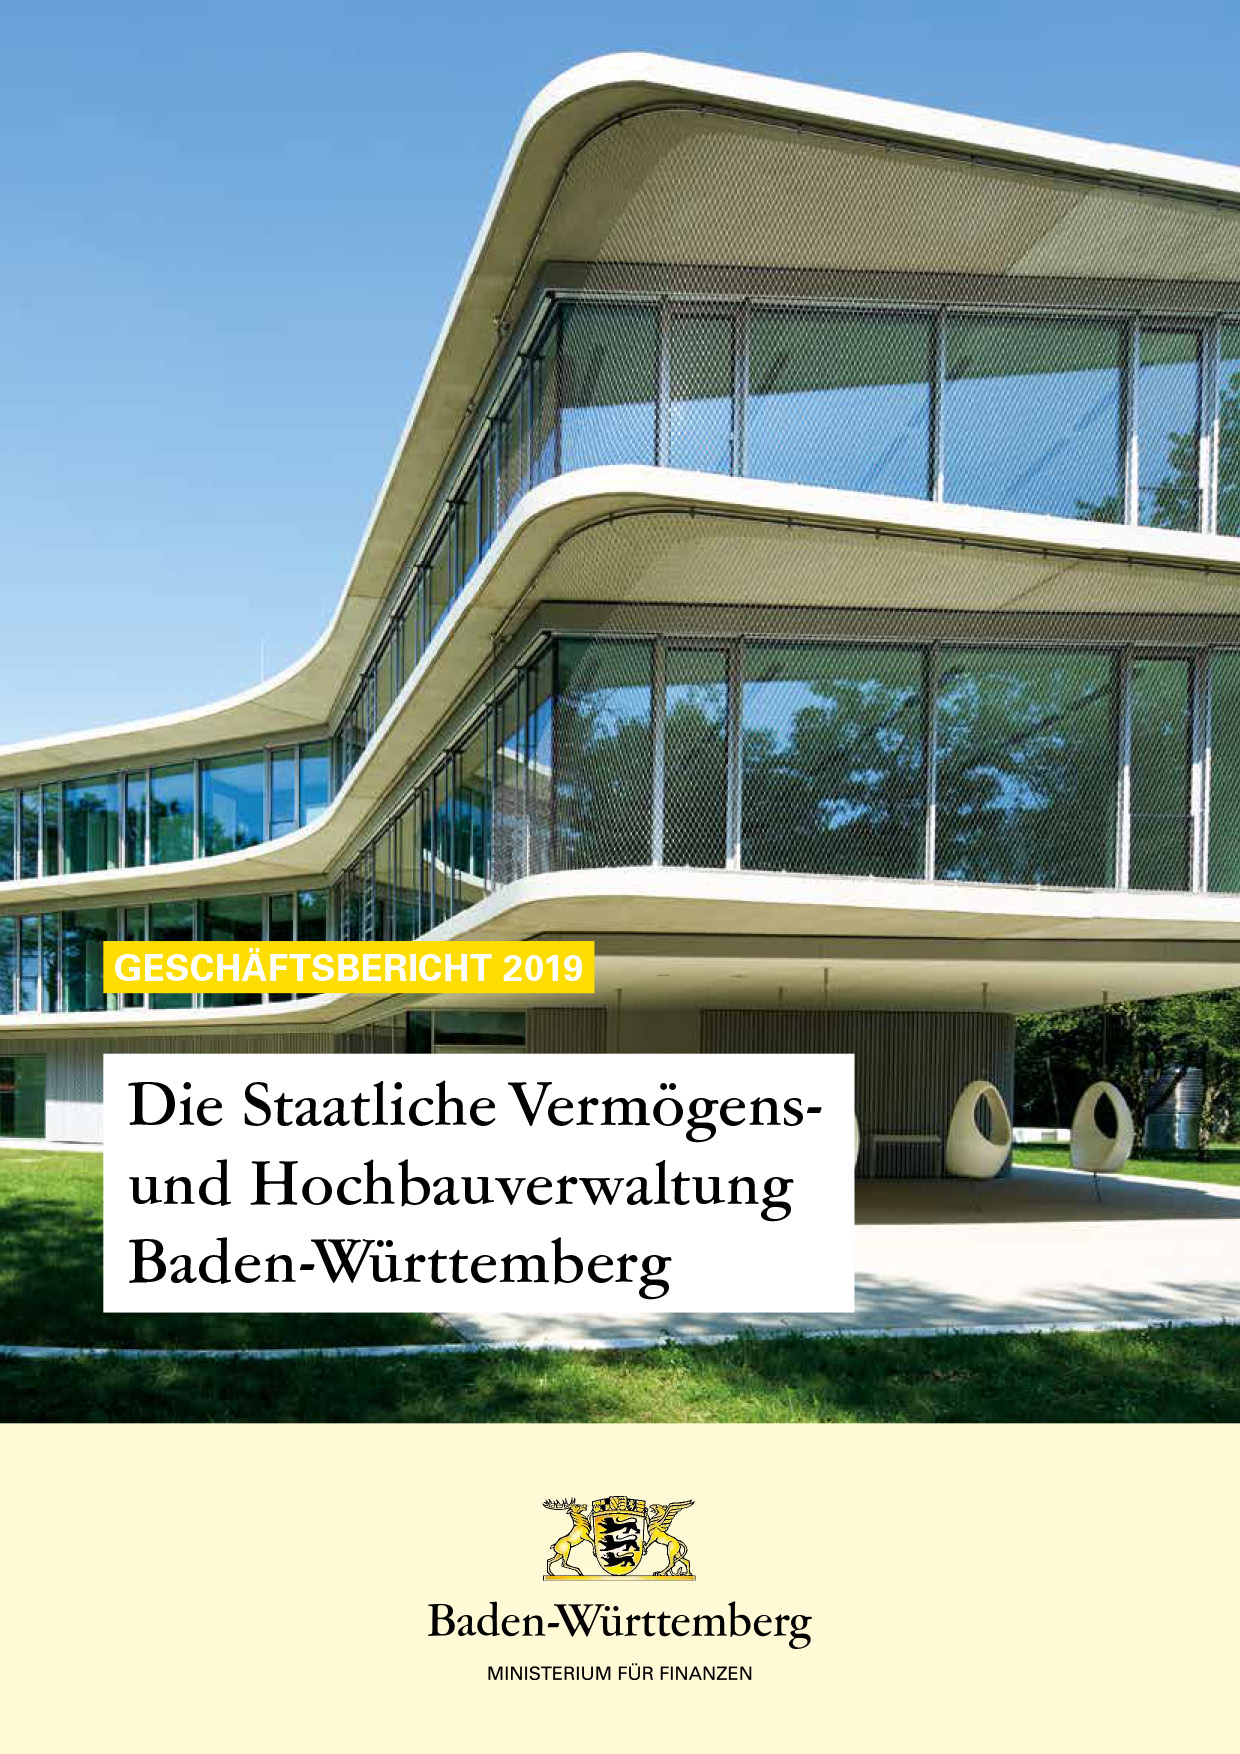 farbiger Titel des Geschäftsberichts 2019 der Staatlichen Vermögens- und Hochbauverwaltung Baden-Württemberg